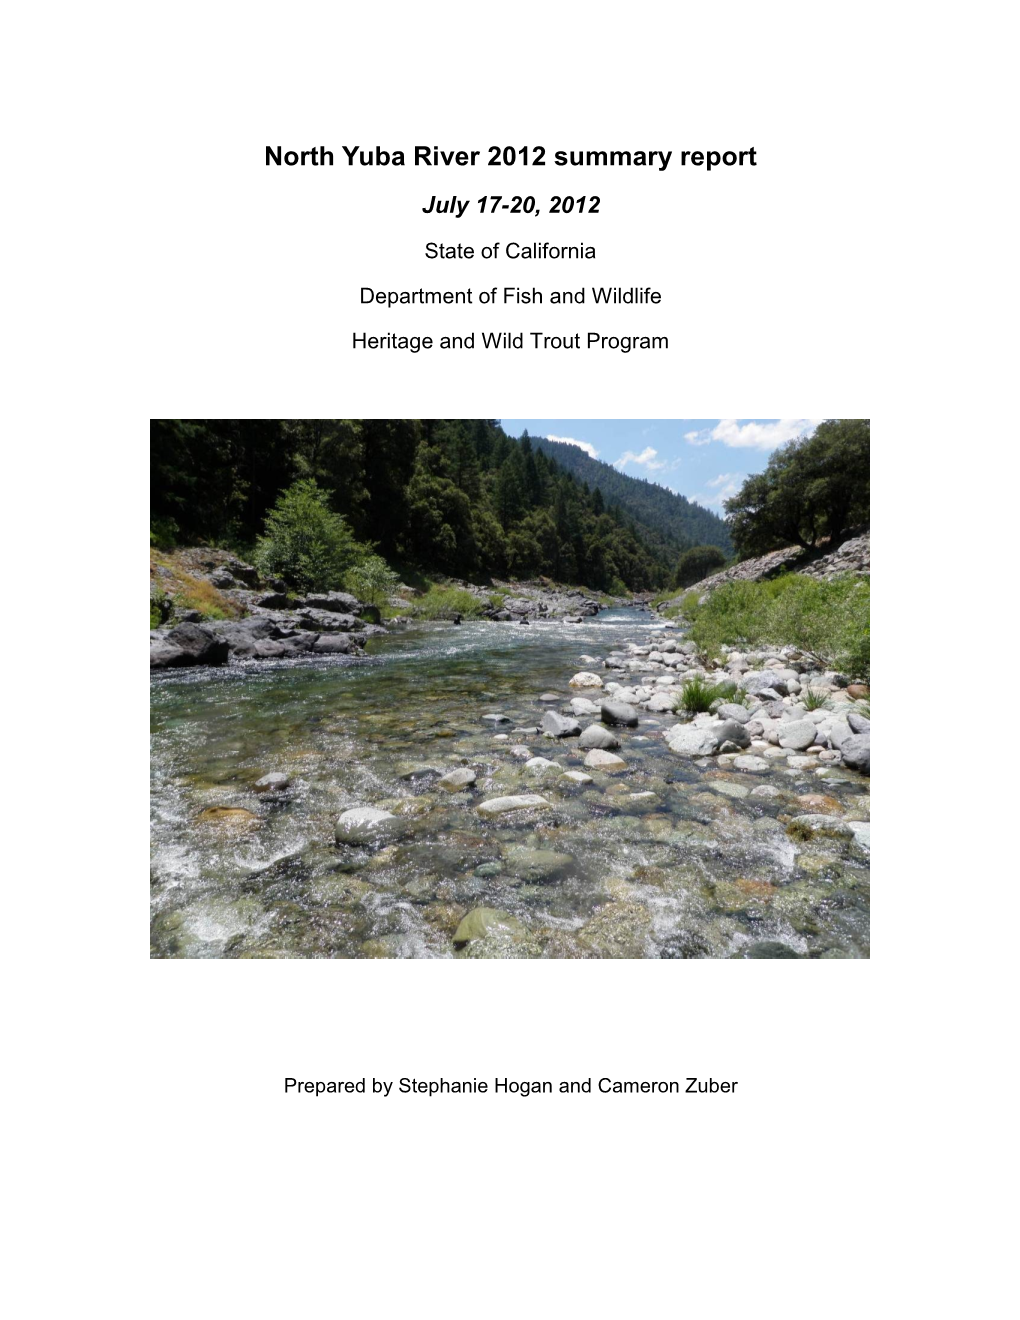 North Yuba River 2012 Summary Report